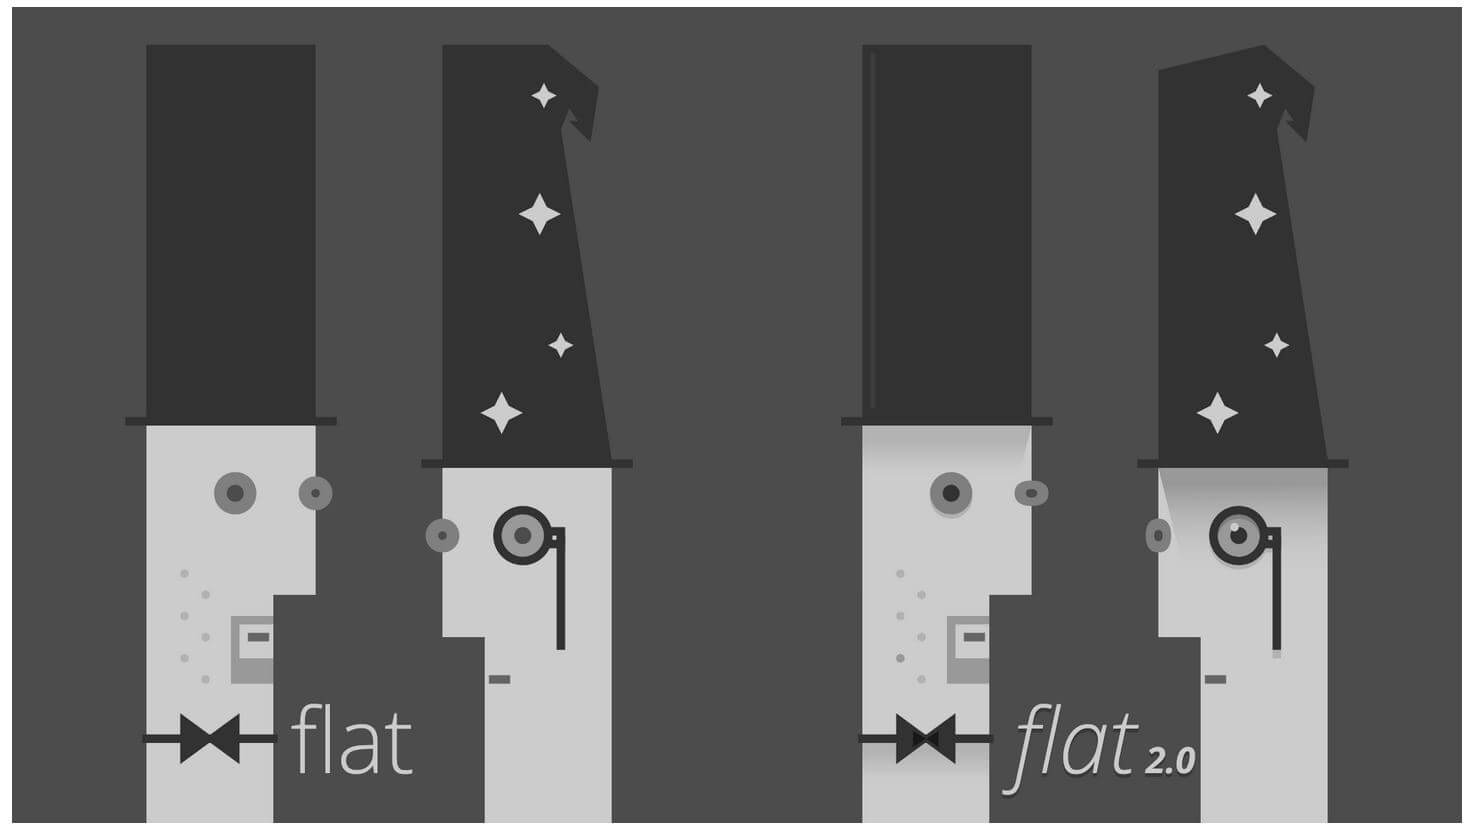 Die Flat 2.0 Evolution – Flat Design einen Schritt weiter gedacht